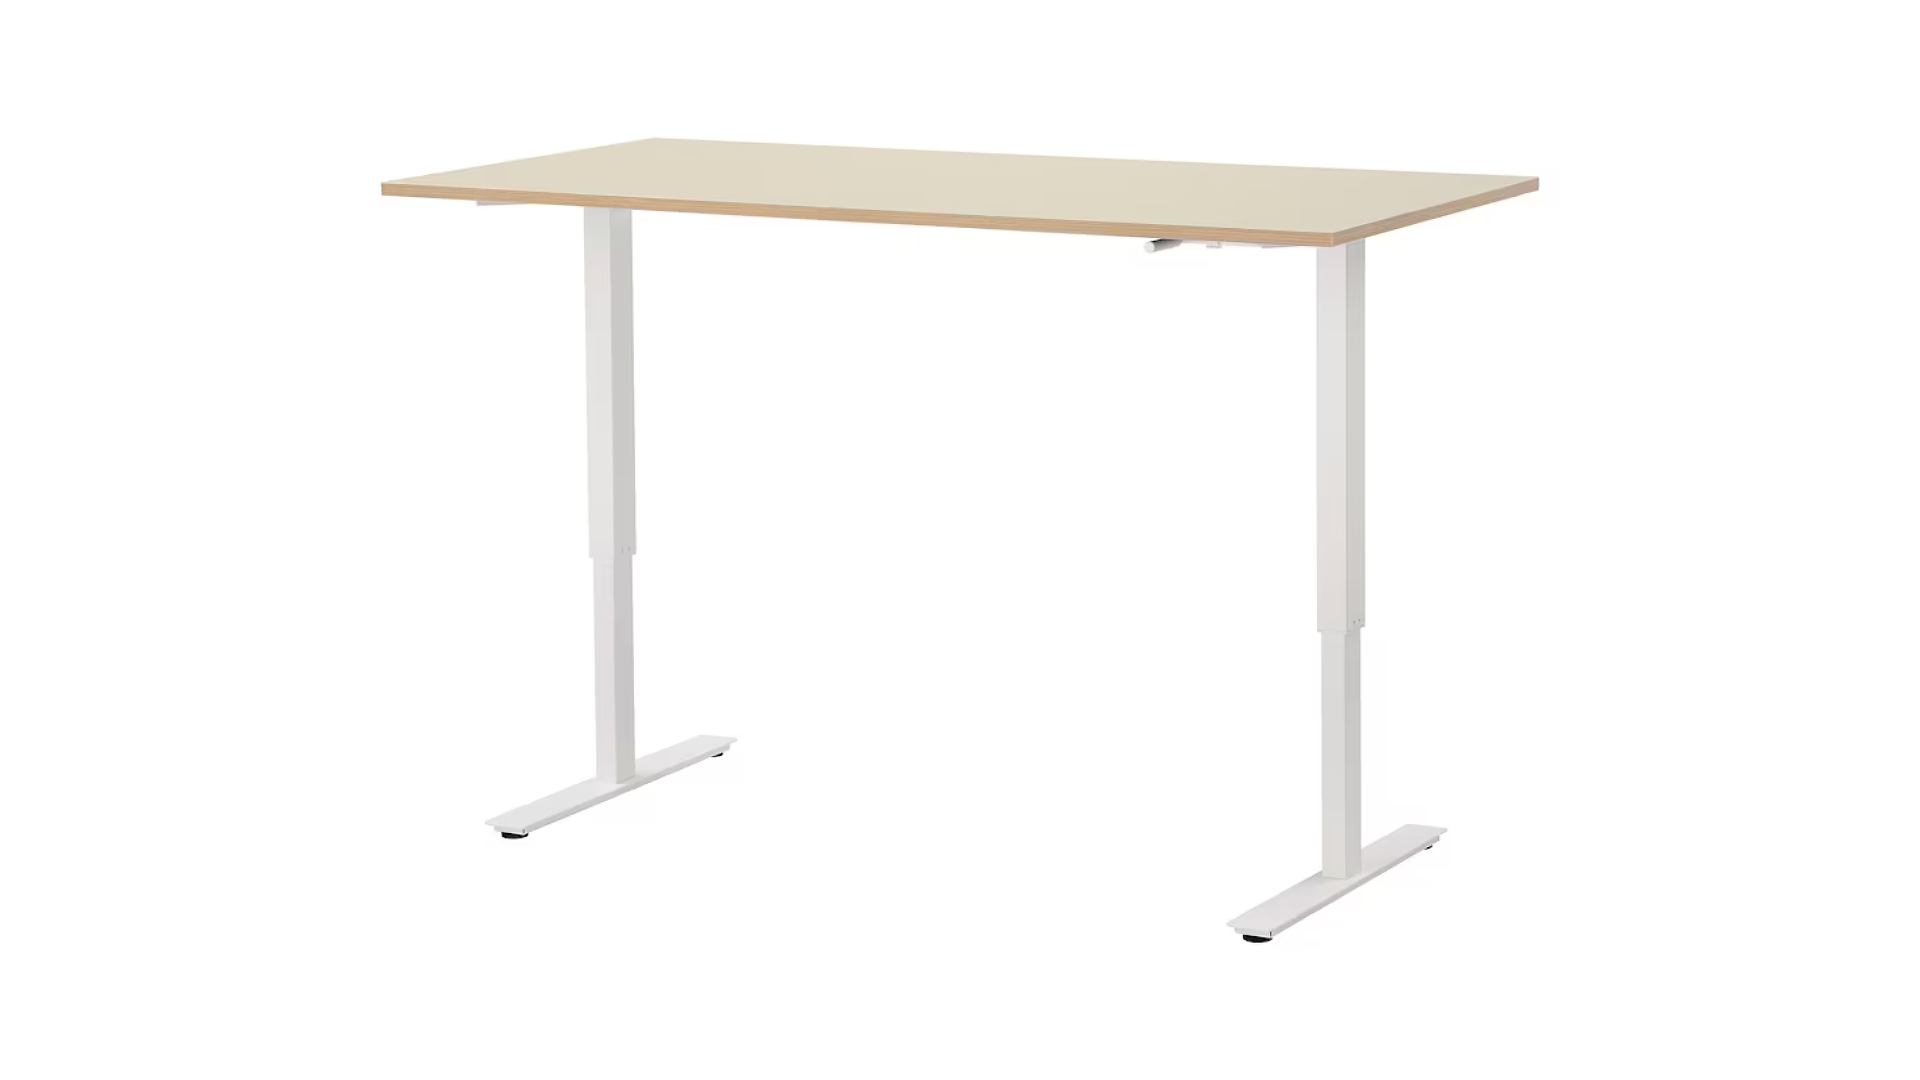 El escritorio alto de Ikea tiene un tablero de madera clara y patas blancas, visto aquí contra un fondo blanco